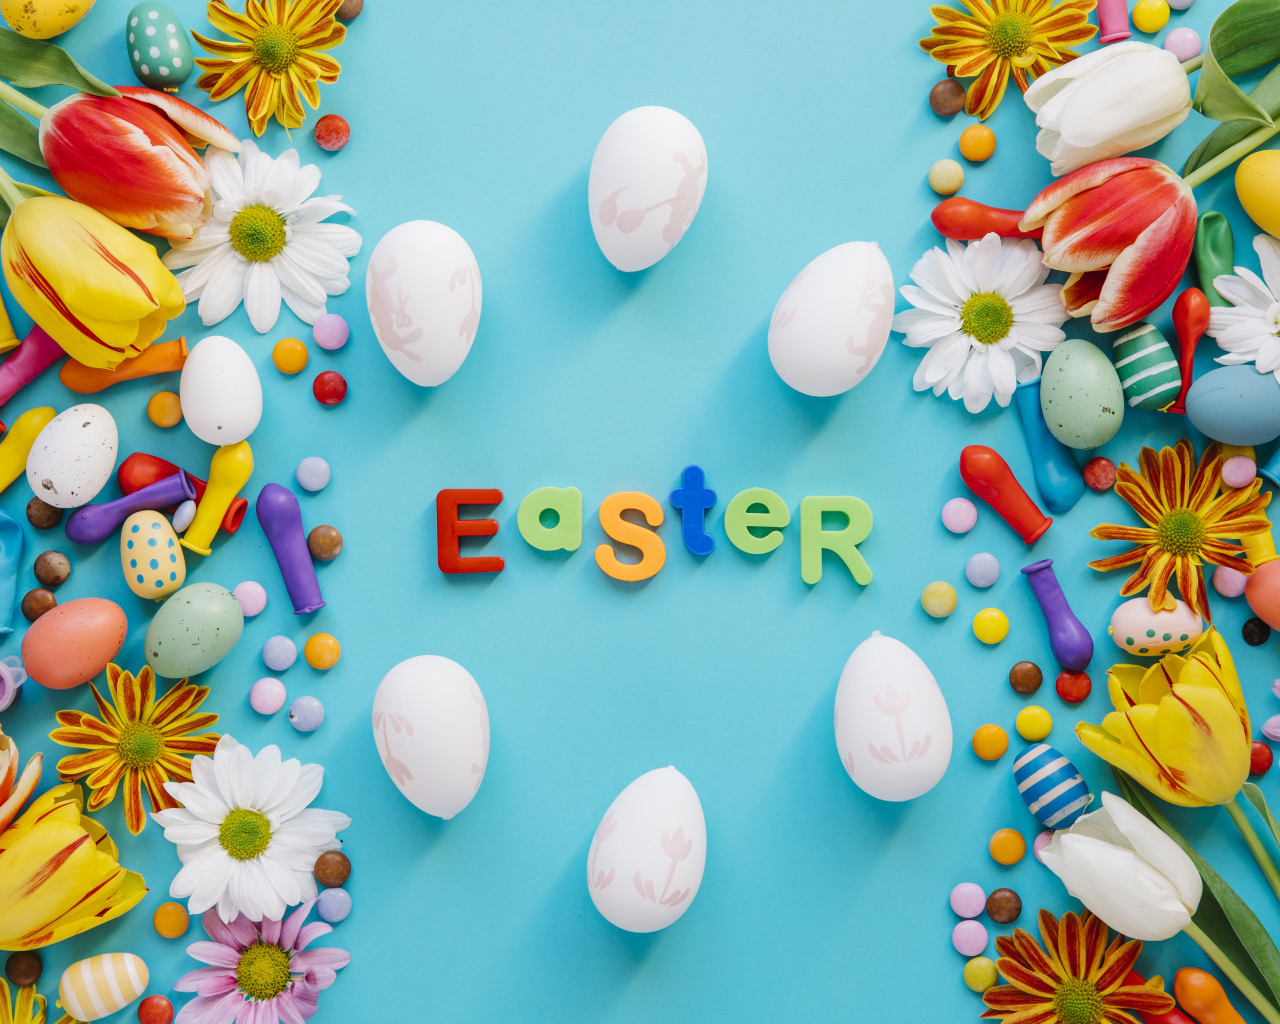 Надпись Пасха на английском на голубом фоне с конфетами и яйцами